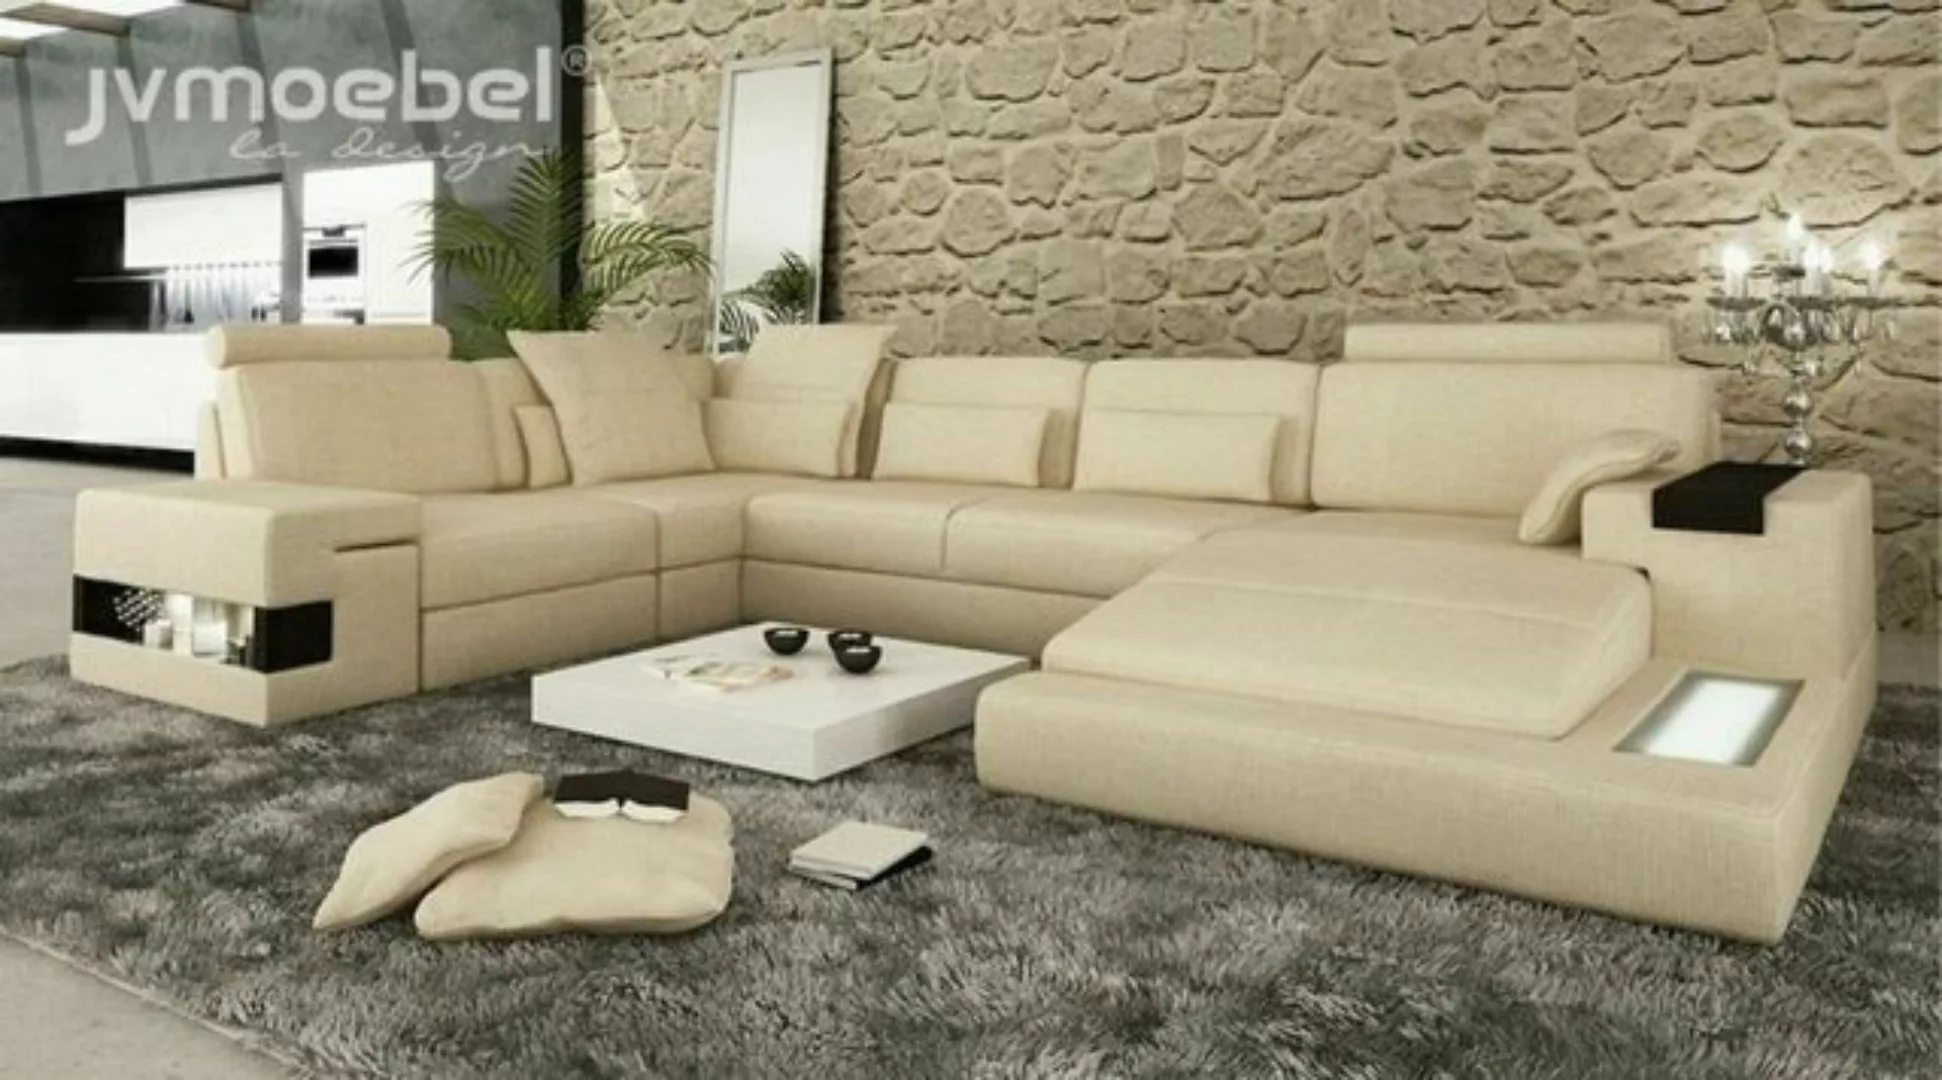 JVmoebel Ecksofa Ecksofa Couch Polster Couchen Neu Eck U Form Sofa Wohnland günstig online kaufen